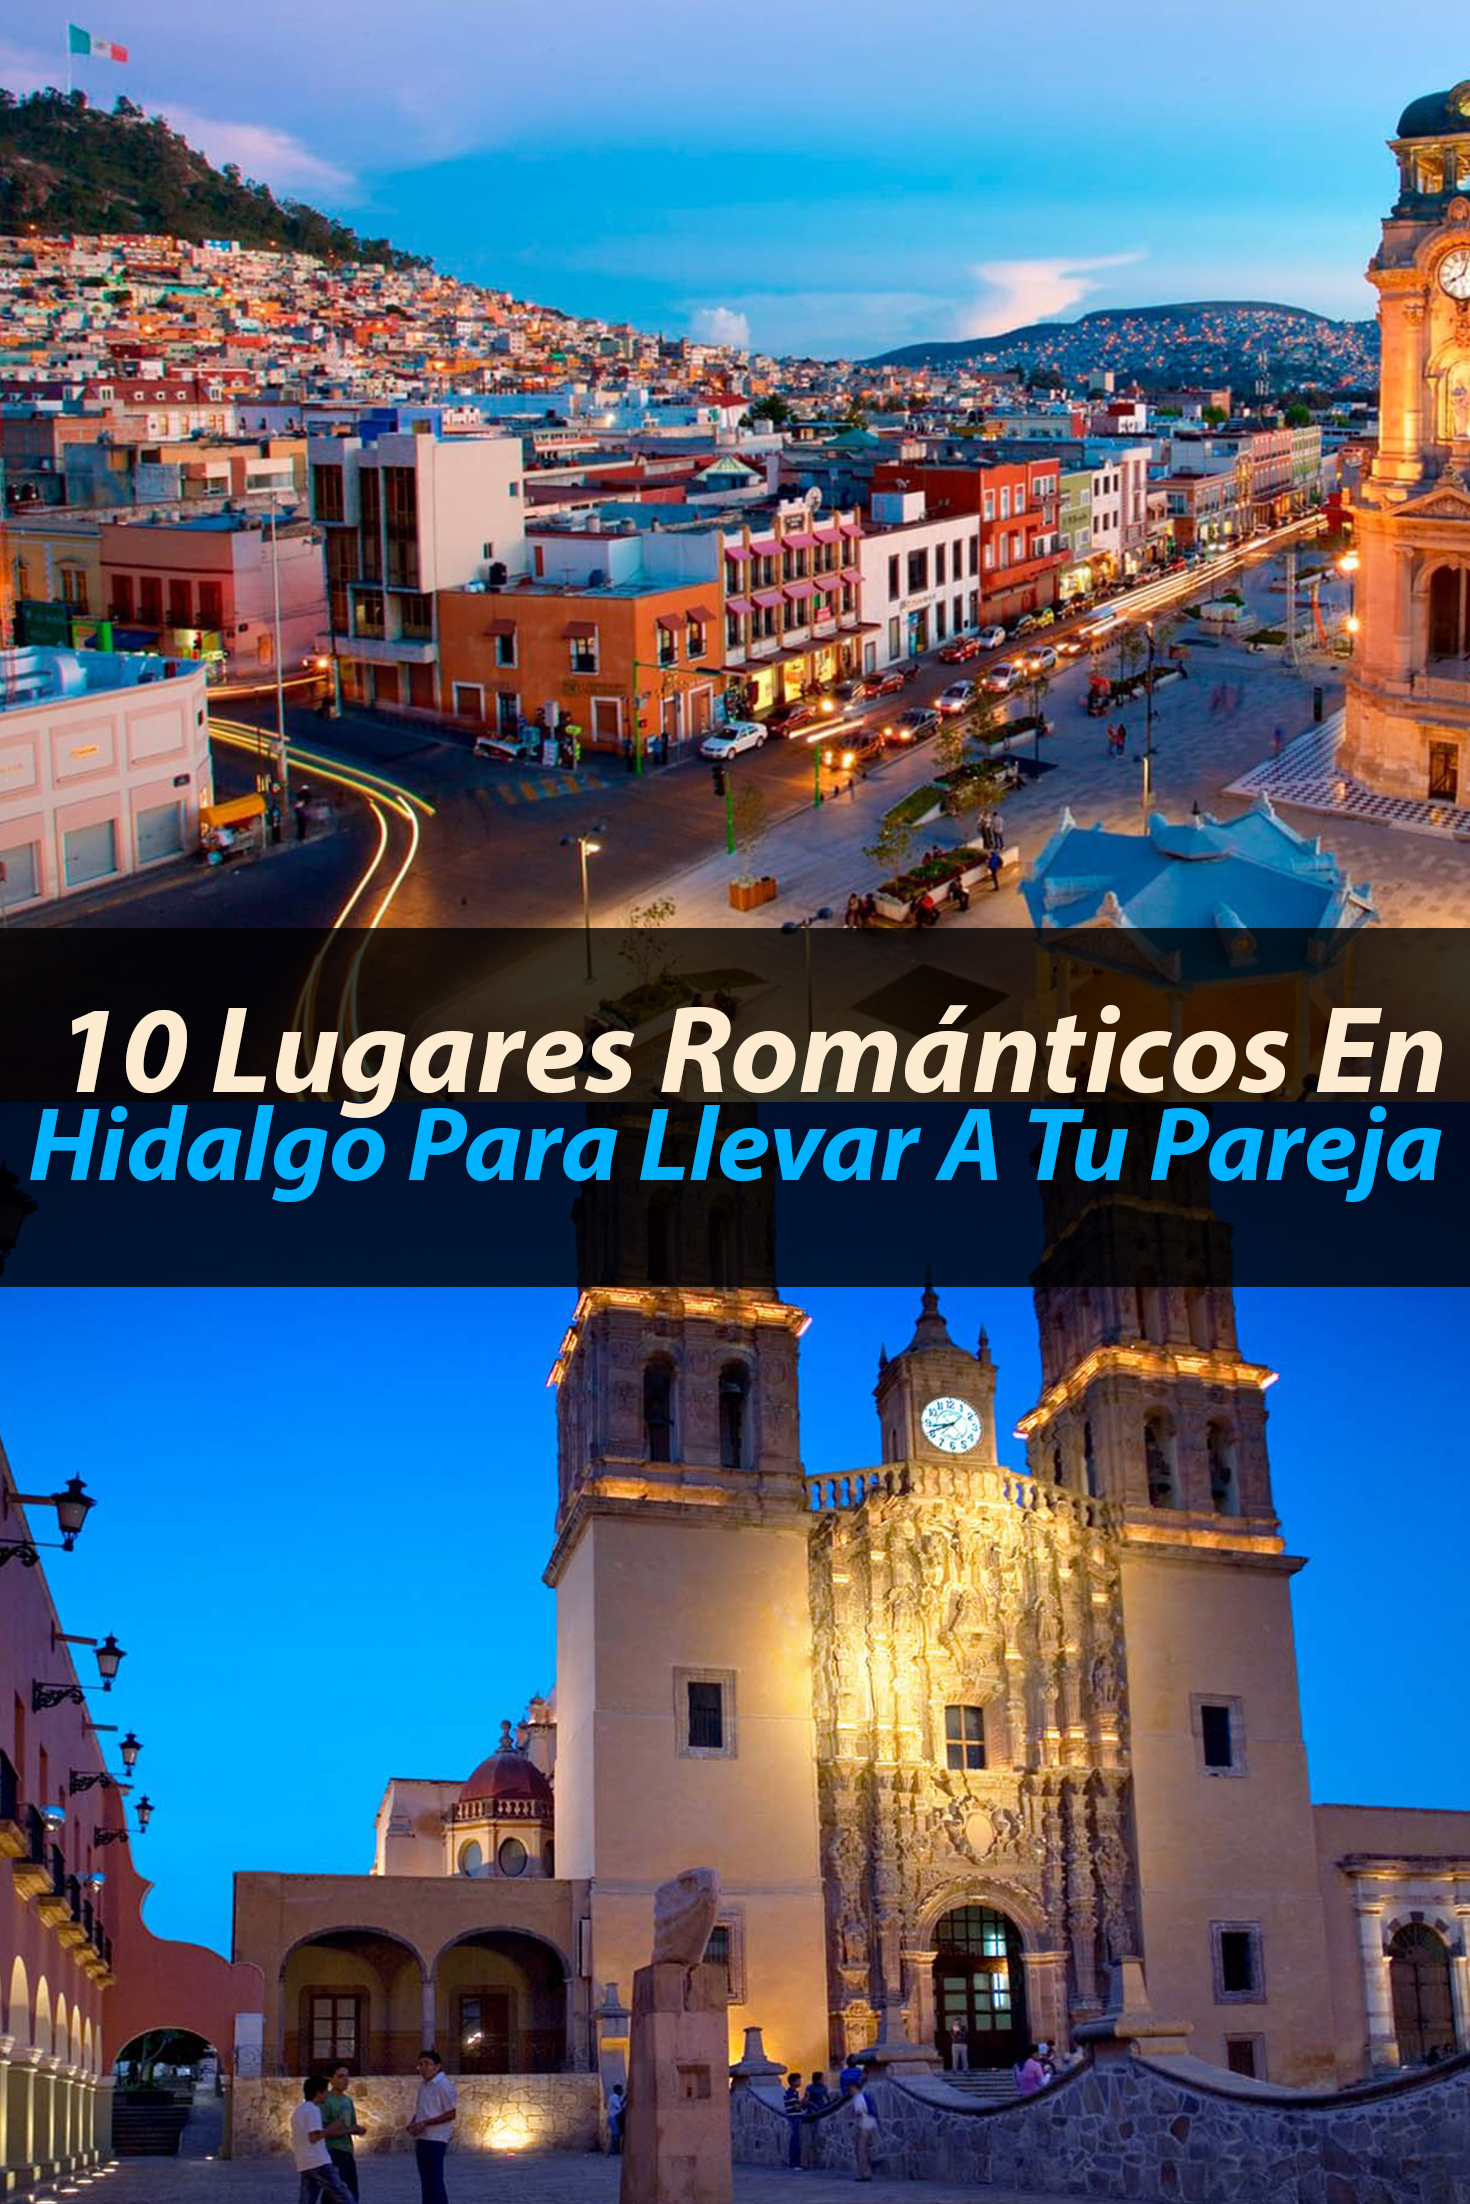 10 lugares románticos en Hidalgo para llevar a tu pareja